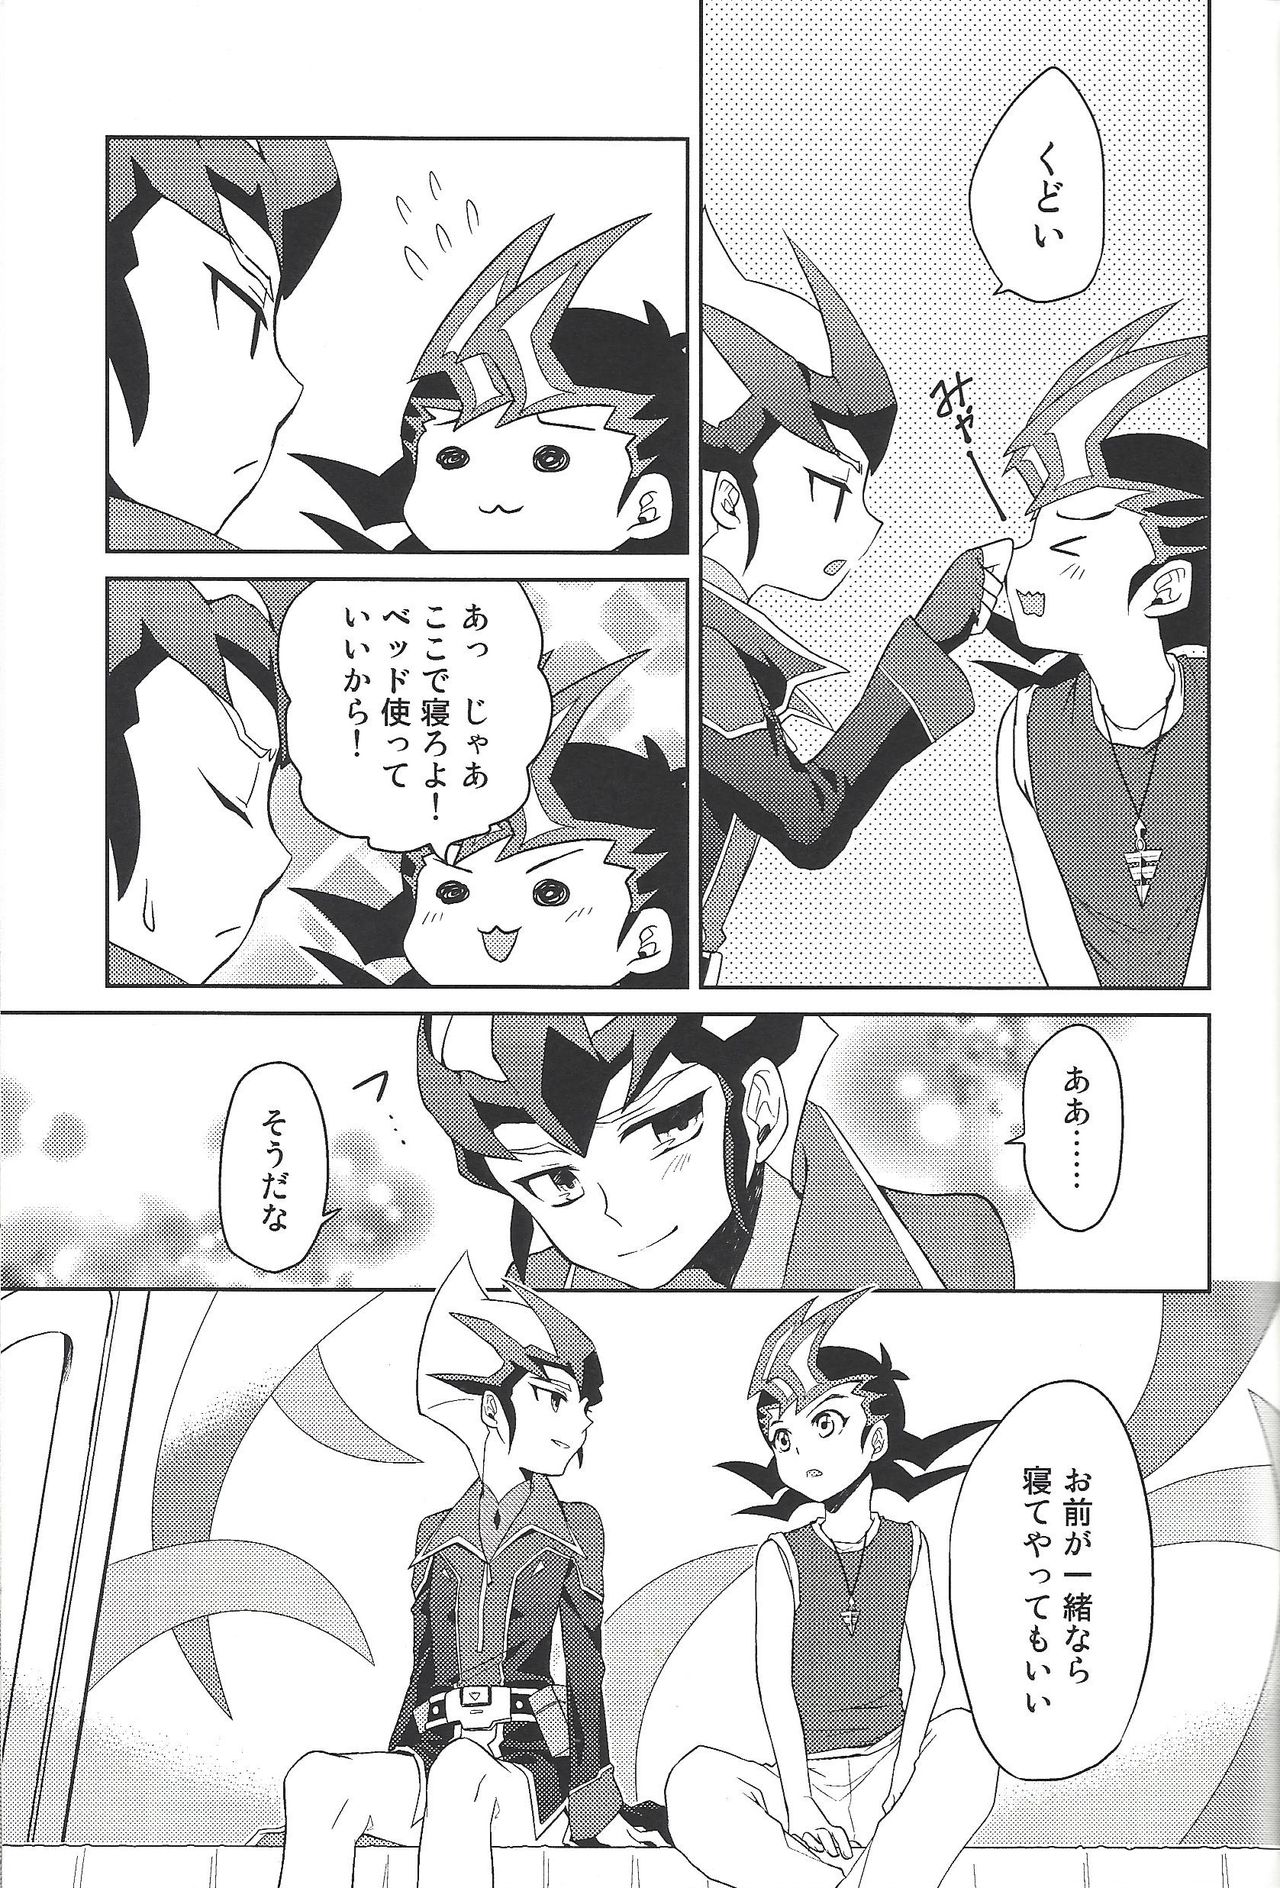 (Sennan Battle Phase 13) [G-da (kyugen)] 384400 Km-saki no hana o taoru (Yu-Gi-Oh! ZEXAL) page 12 full